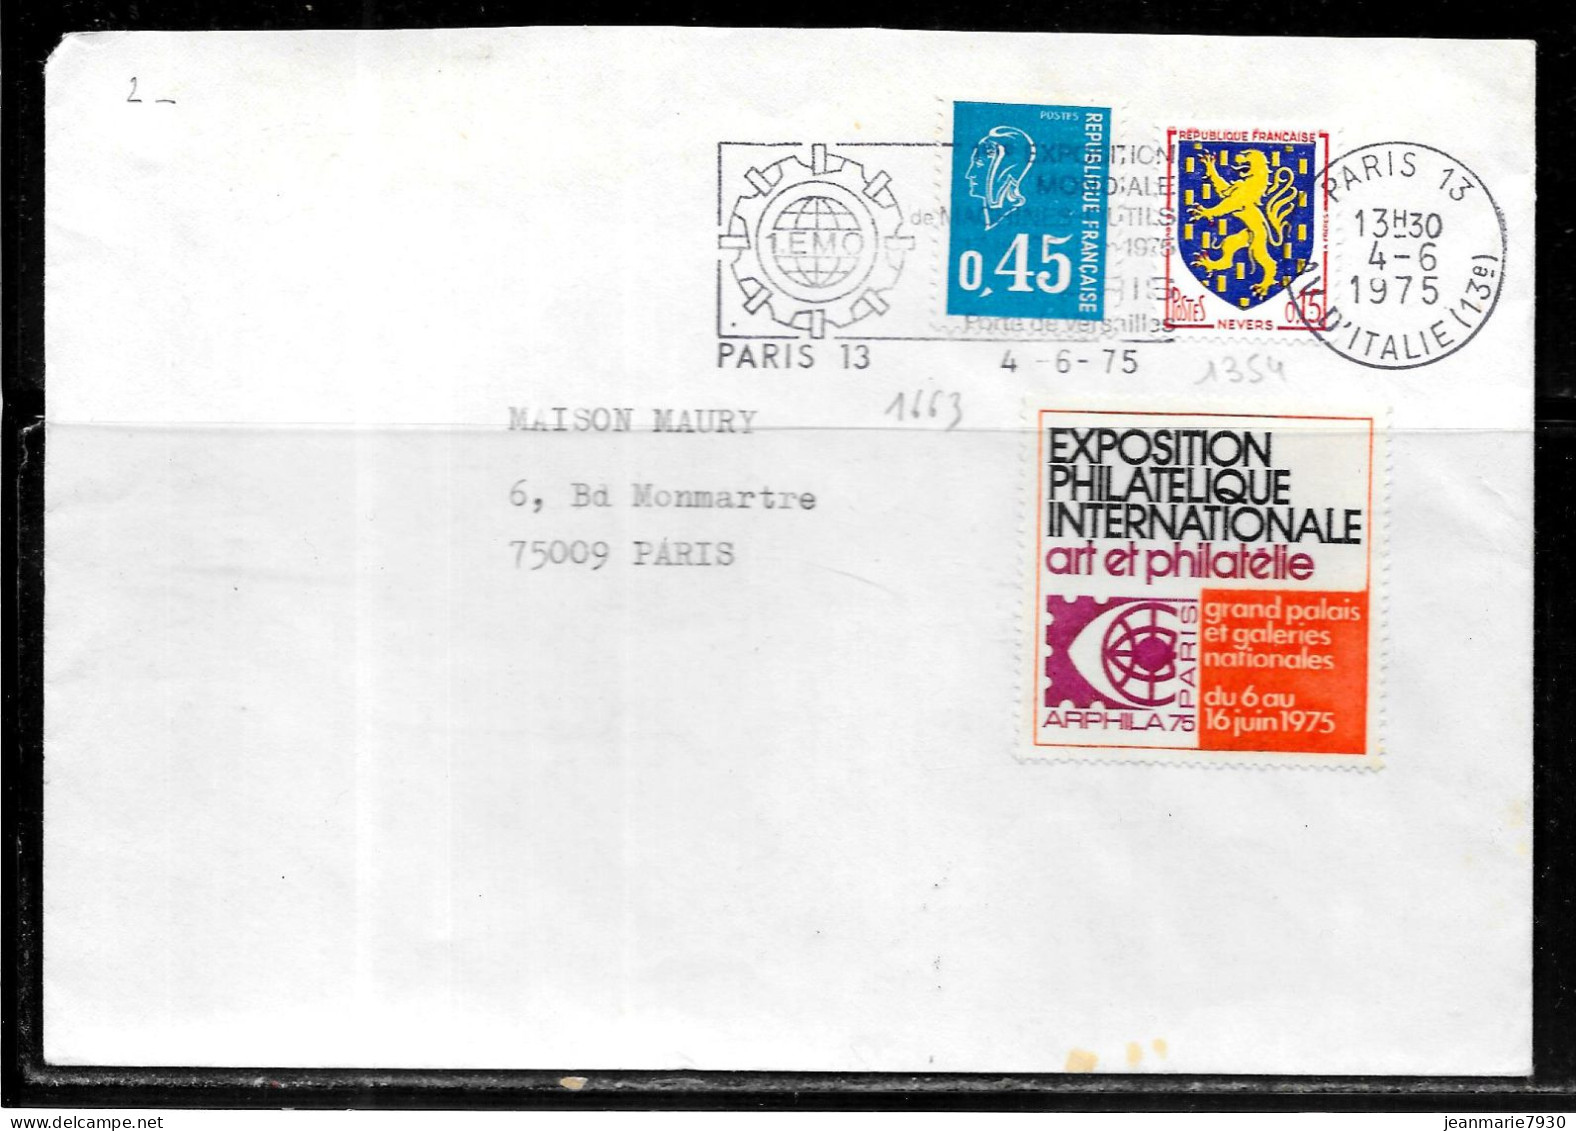 F269 - LETTRE DE PARIS 13 DU 04/06/75 - VIGNETTE ARPHILA 75 - Storia Postale